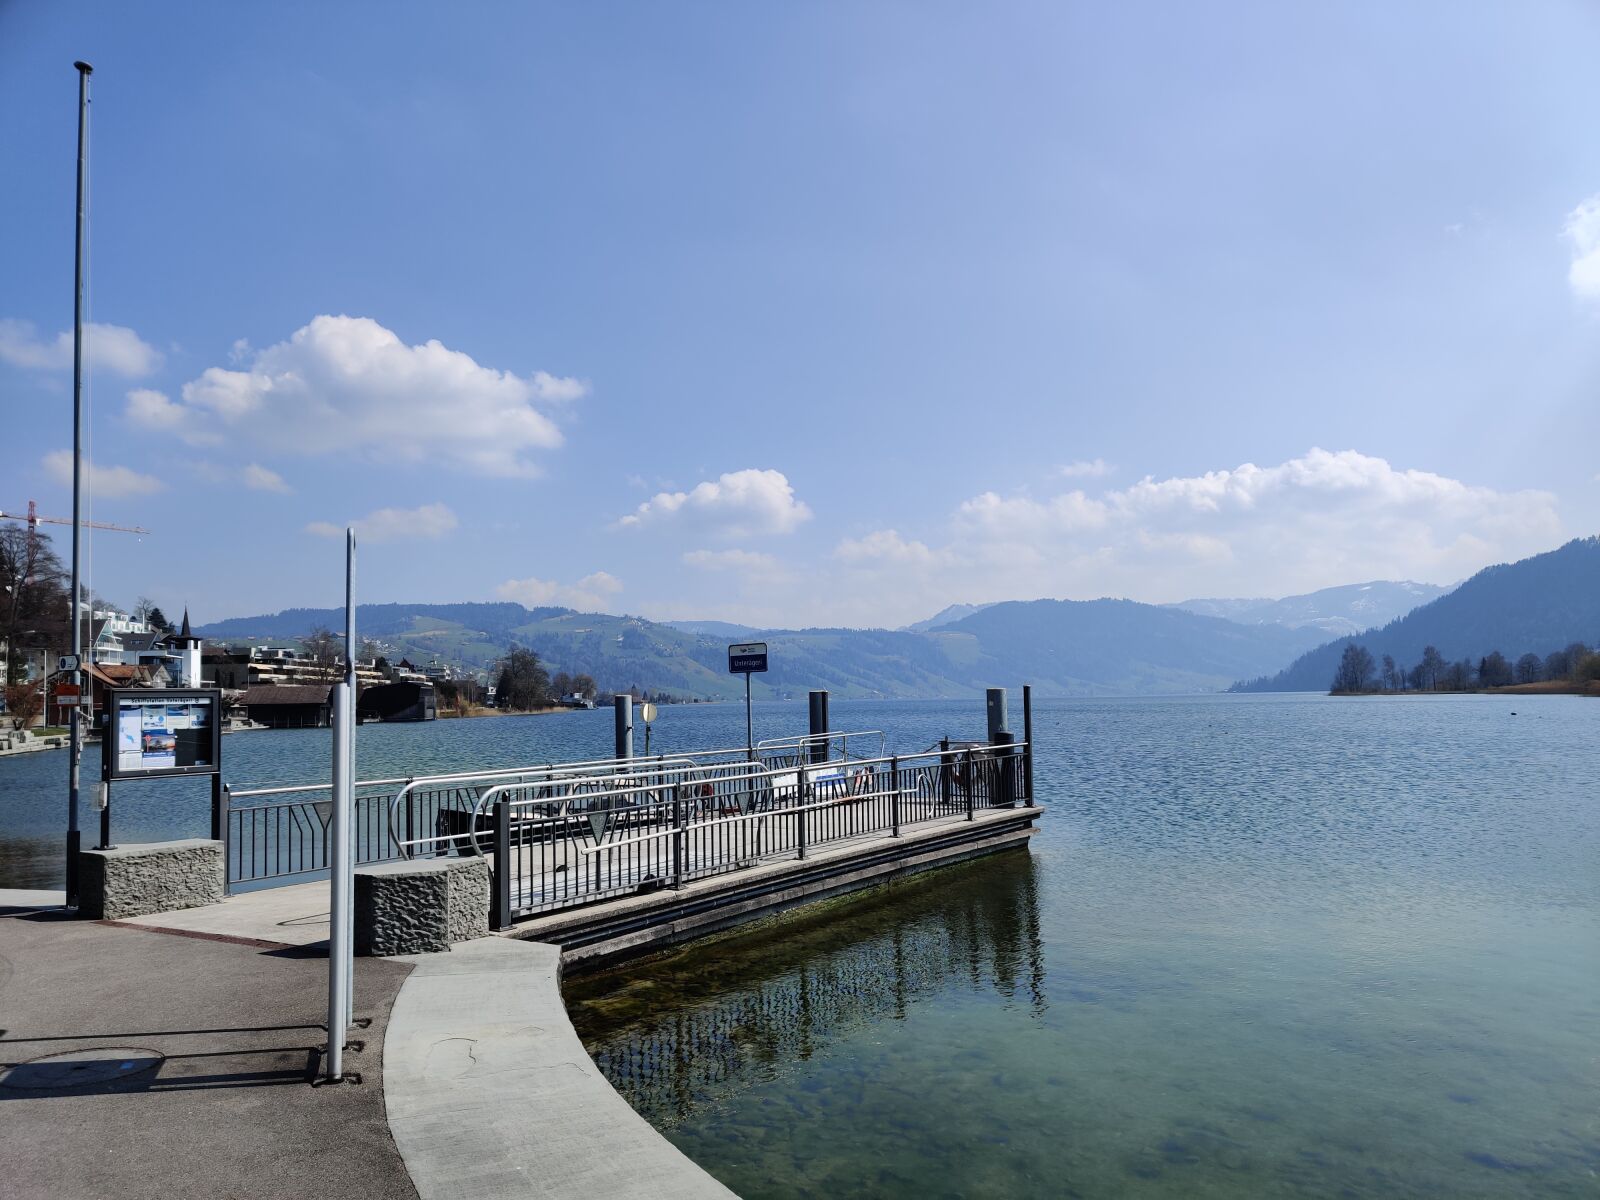 OnePlus GM1913 sample photo. Switzerland, lake, landscape photography